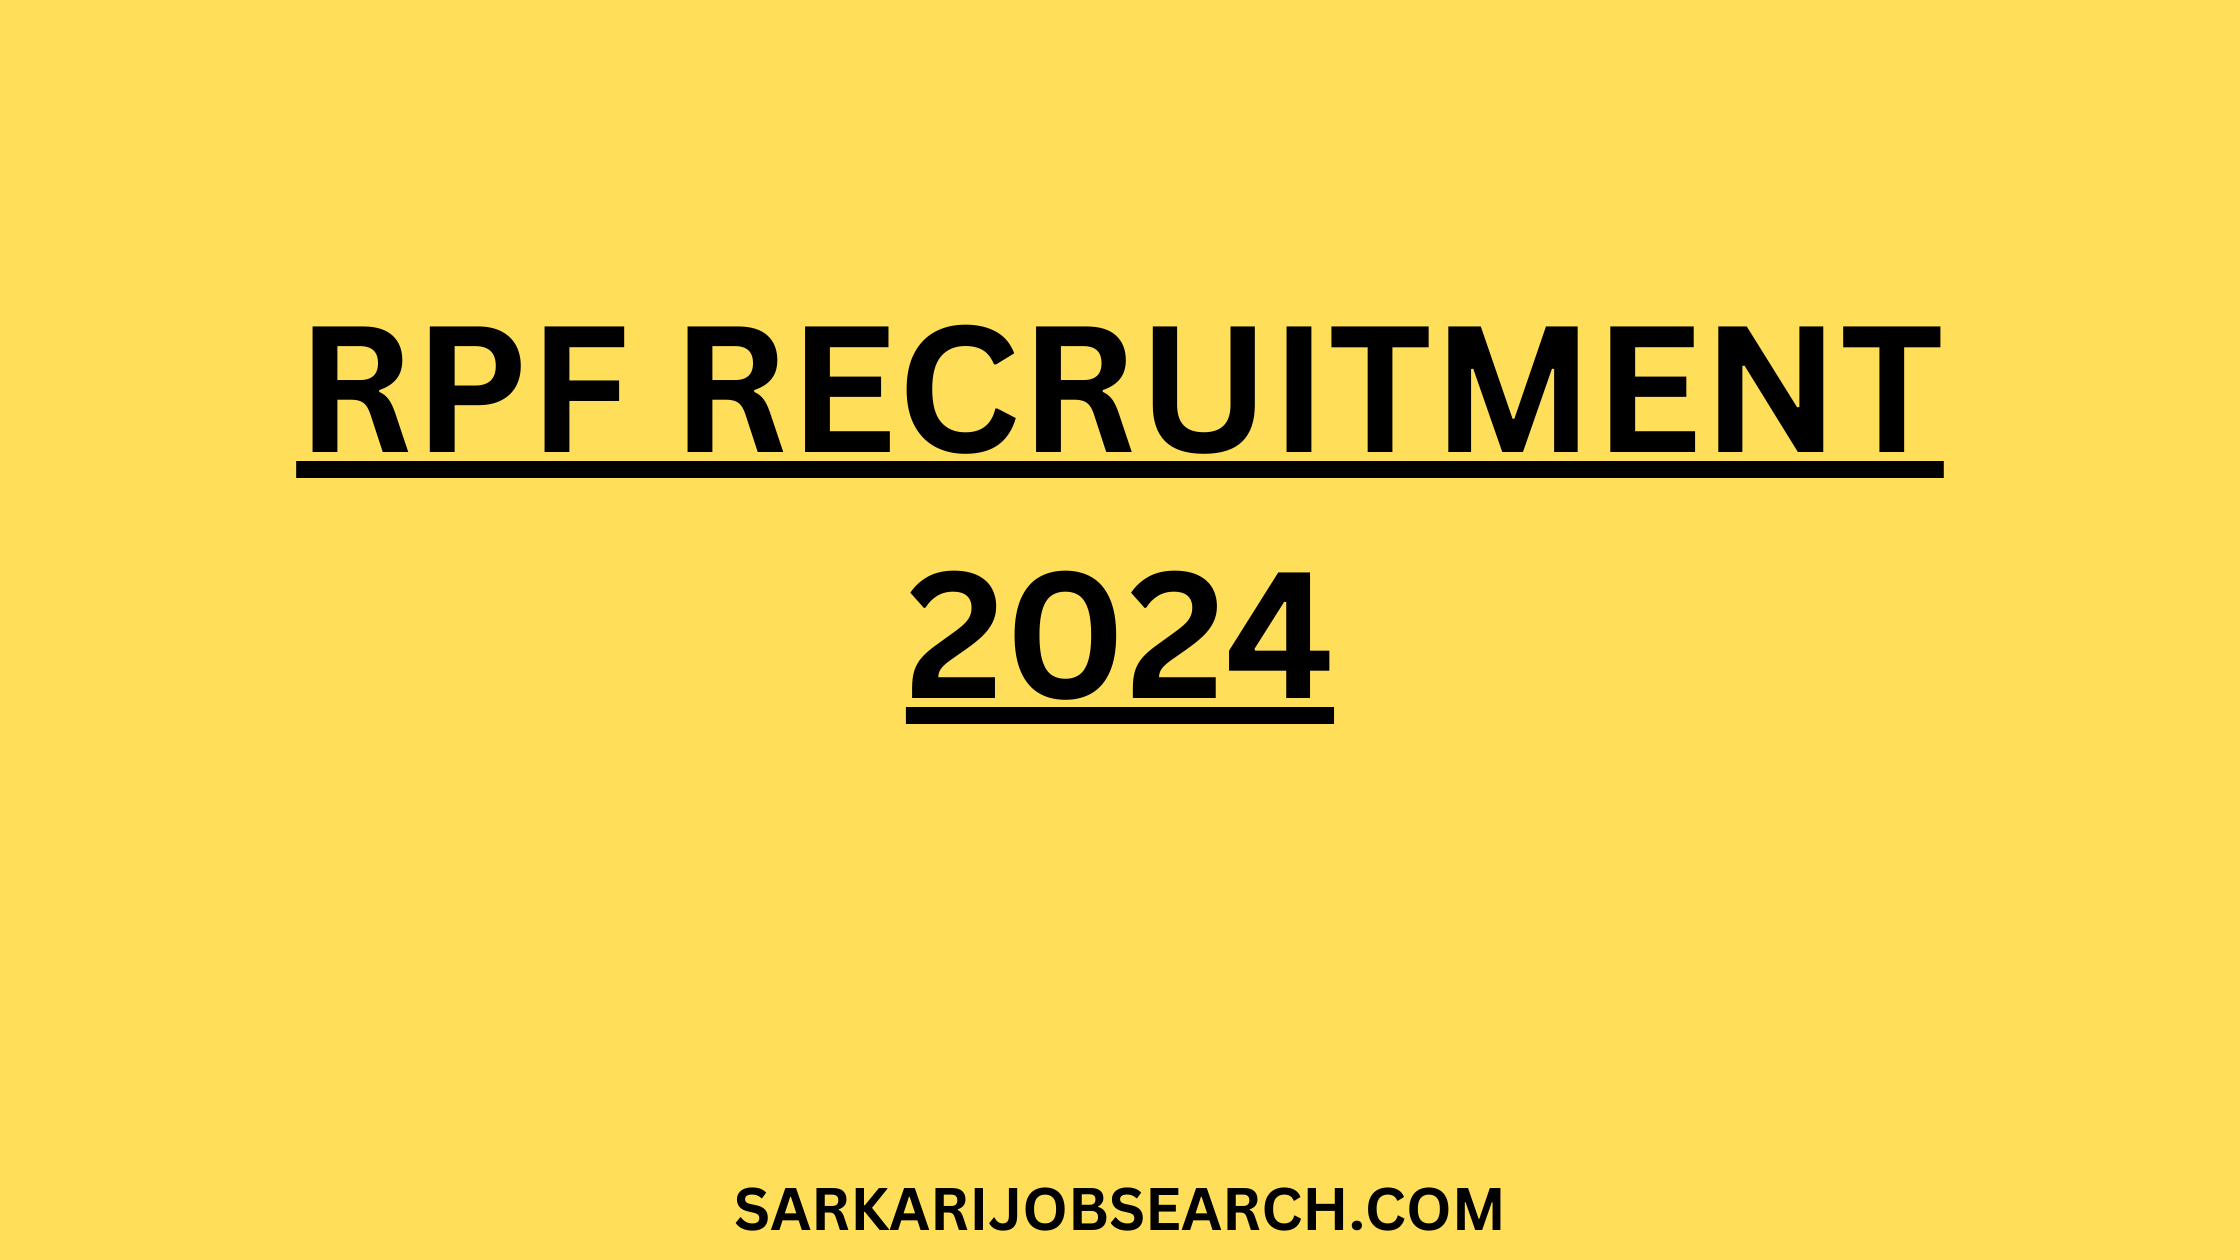 RPF Recruitment 2024 | Full Details